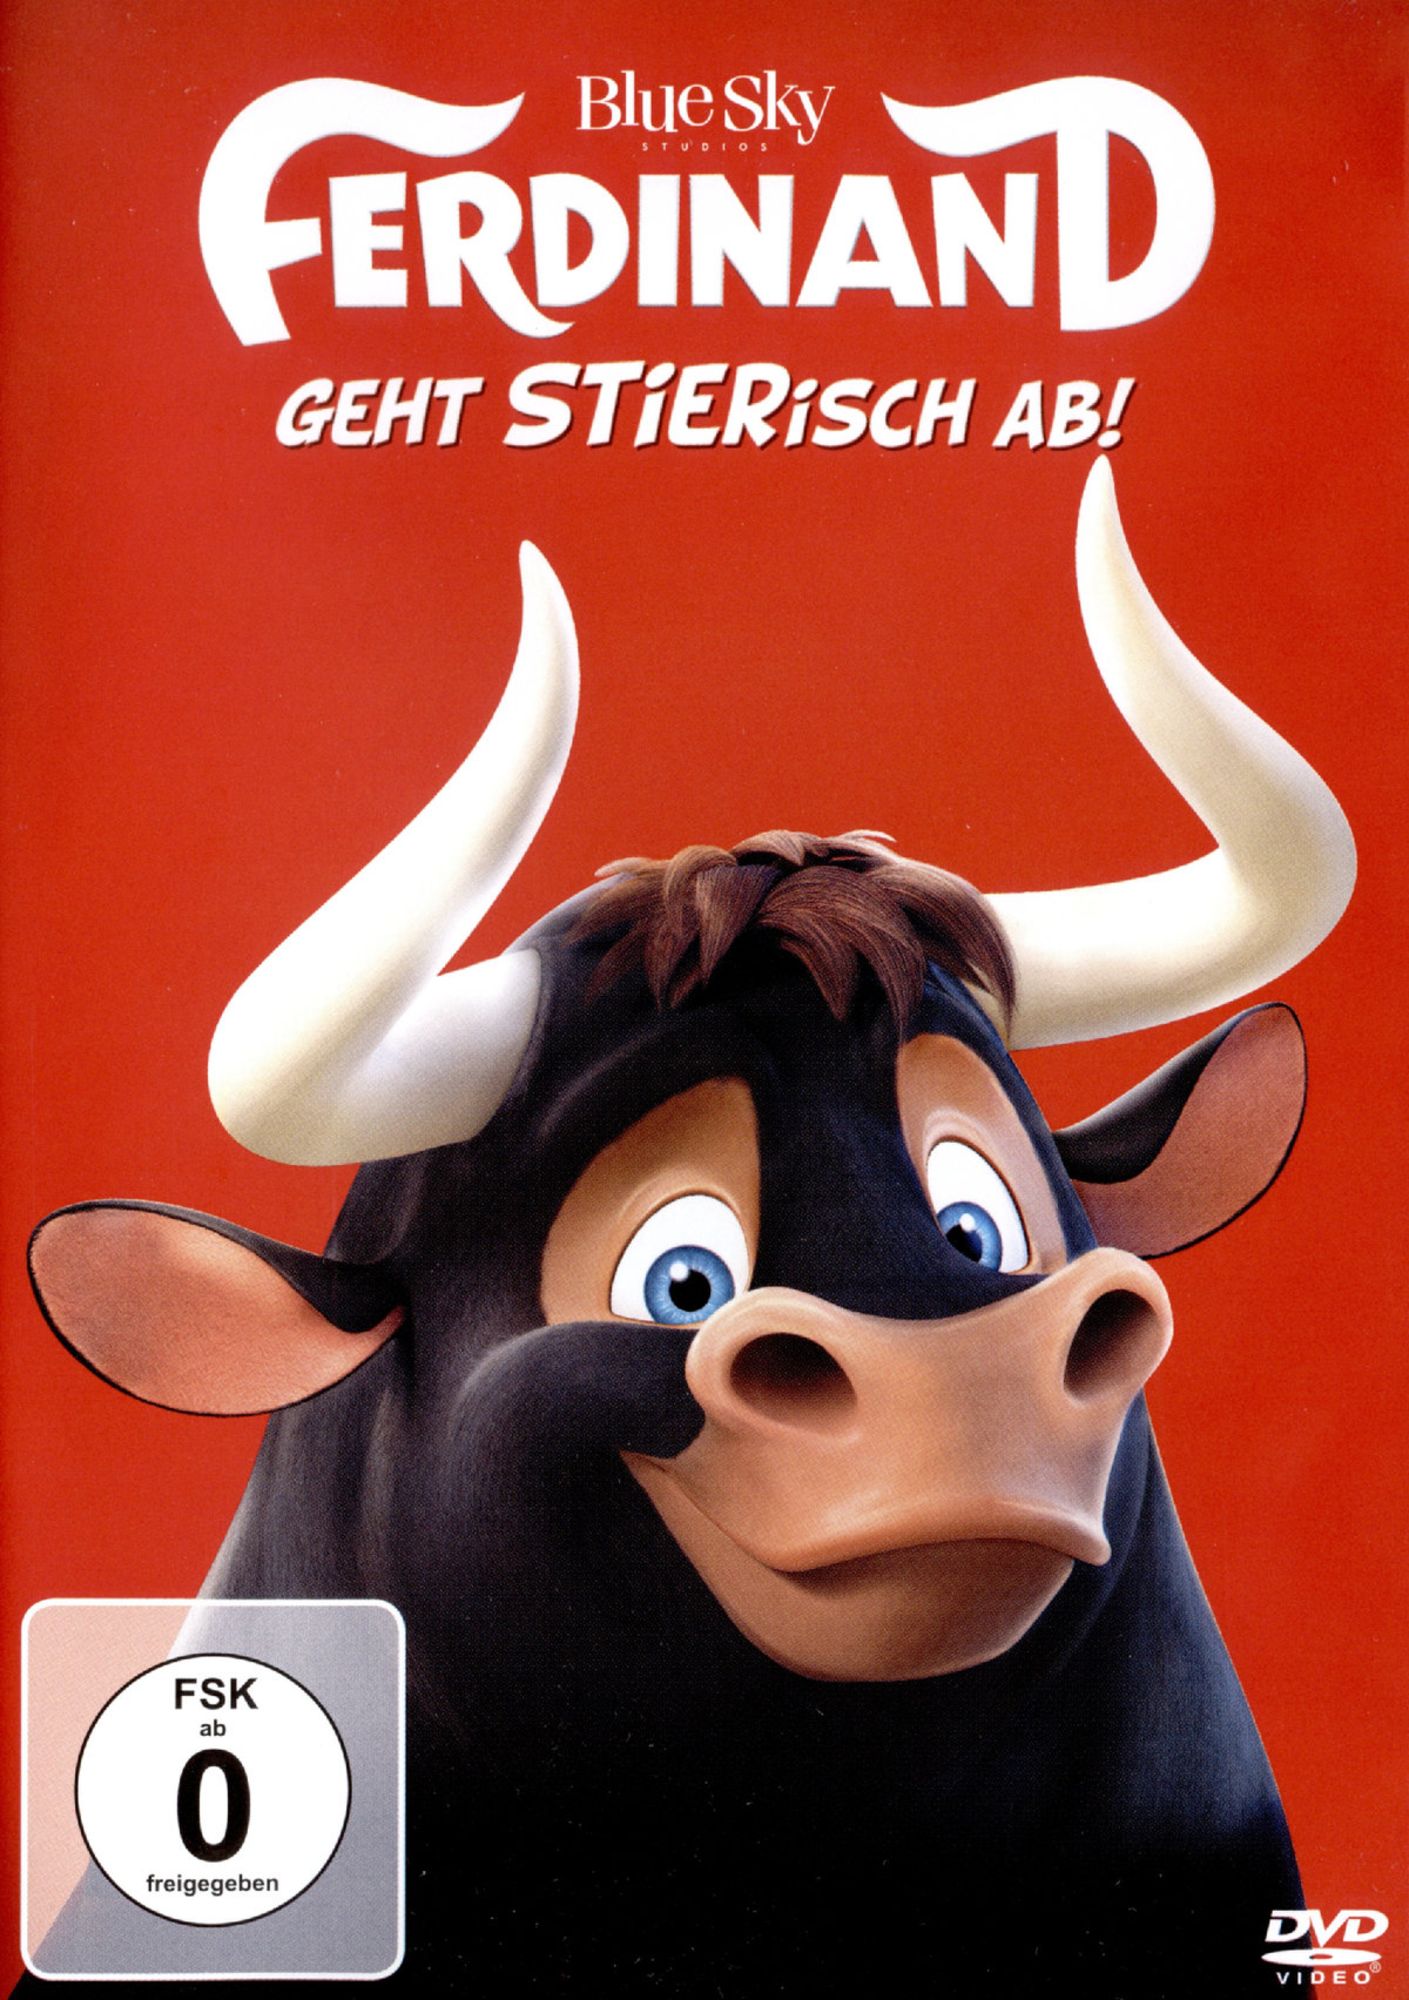 Ferdinand - Geht STIERisch ab!' von 'Carlos Saldanha' - 'DVD